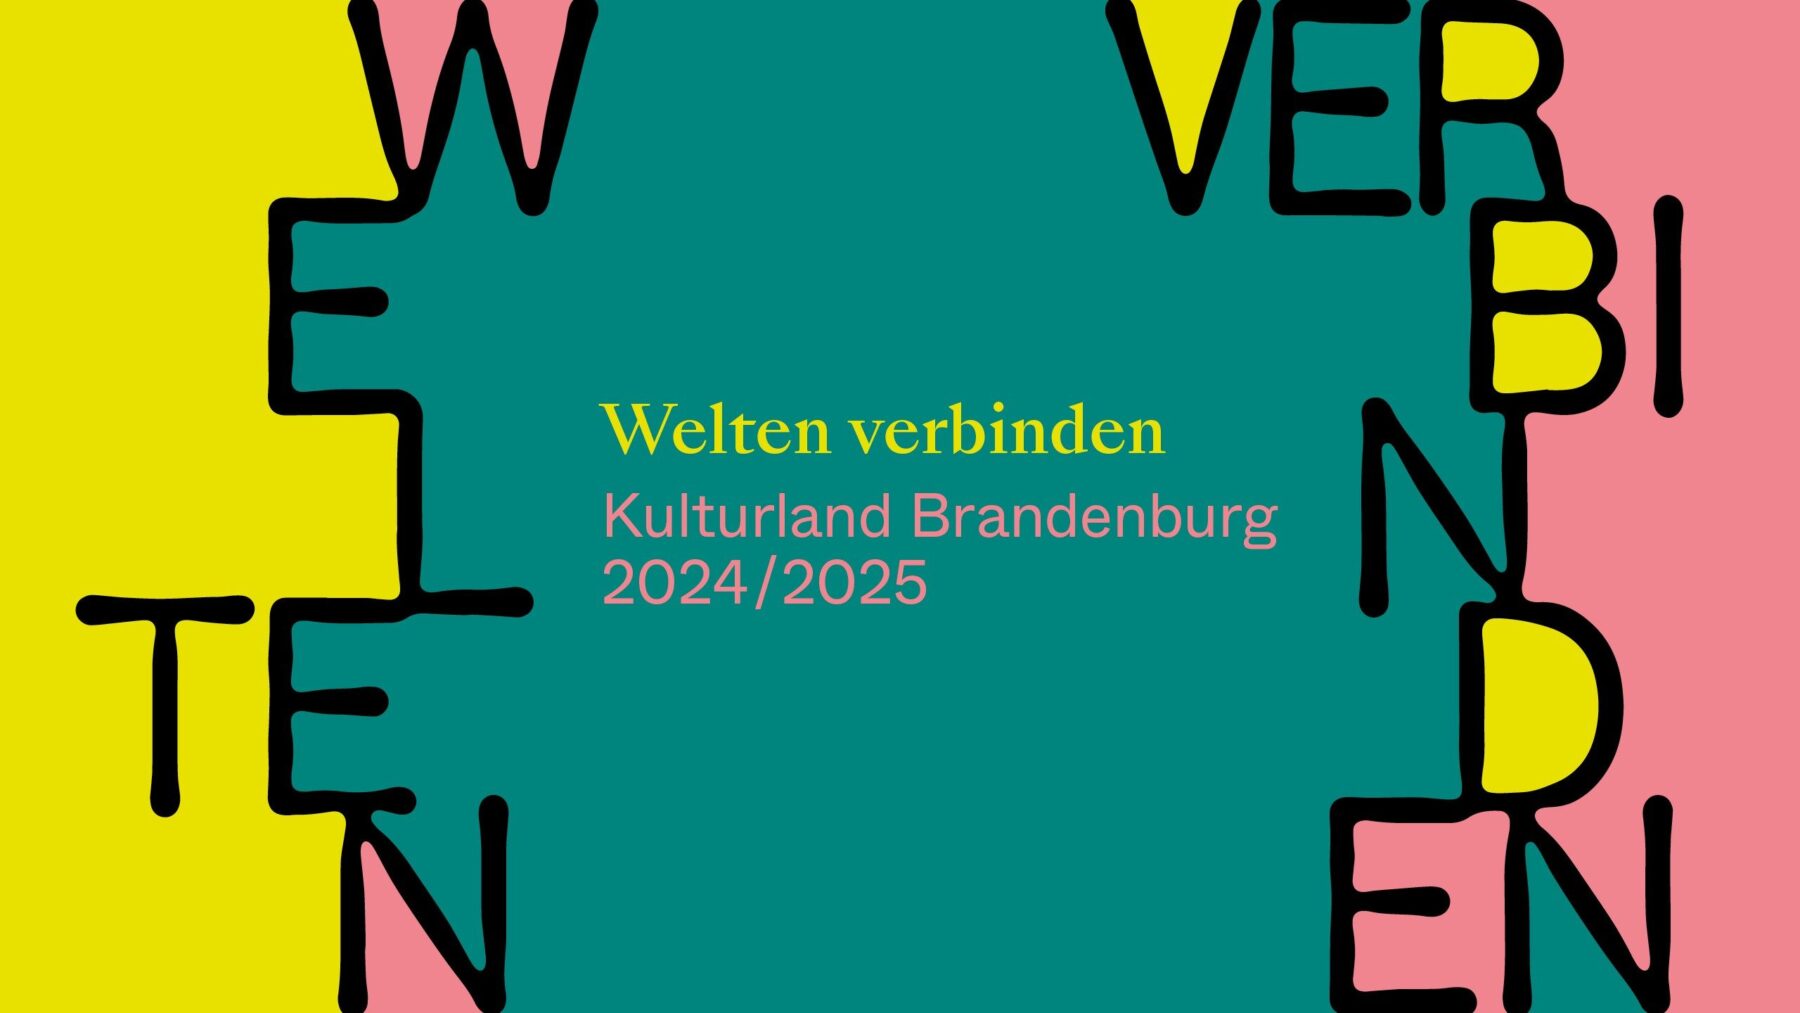 Key Visual "Welten verbinden - Kulturland Brandenburg 2024/2025"